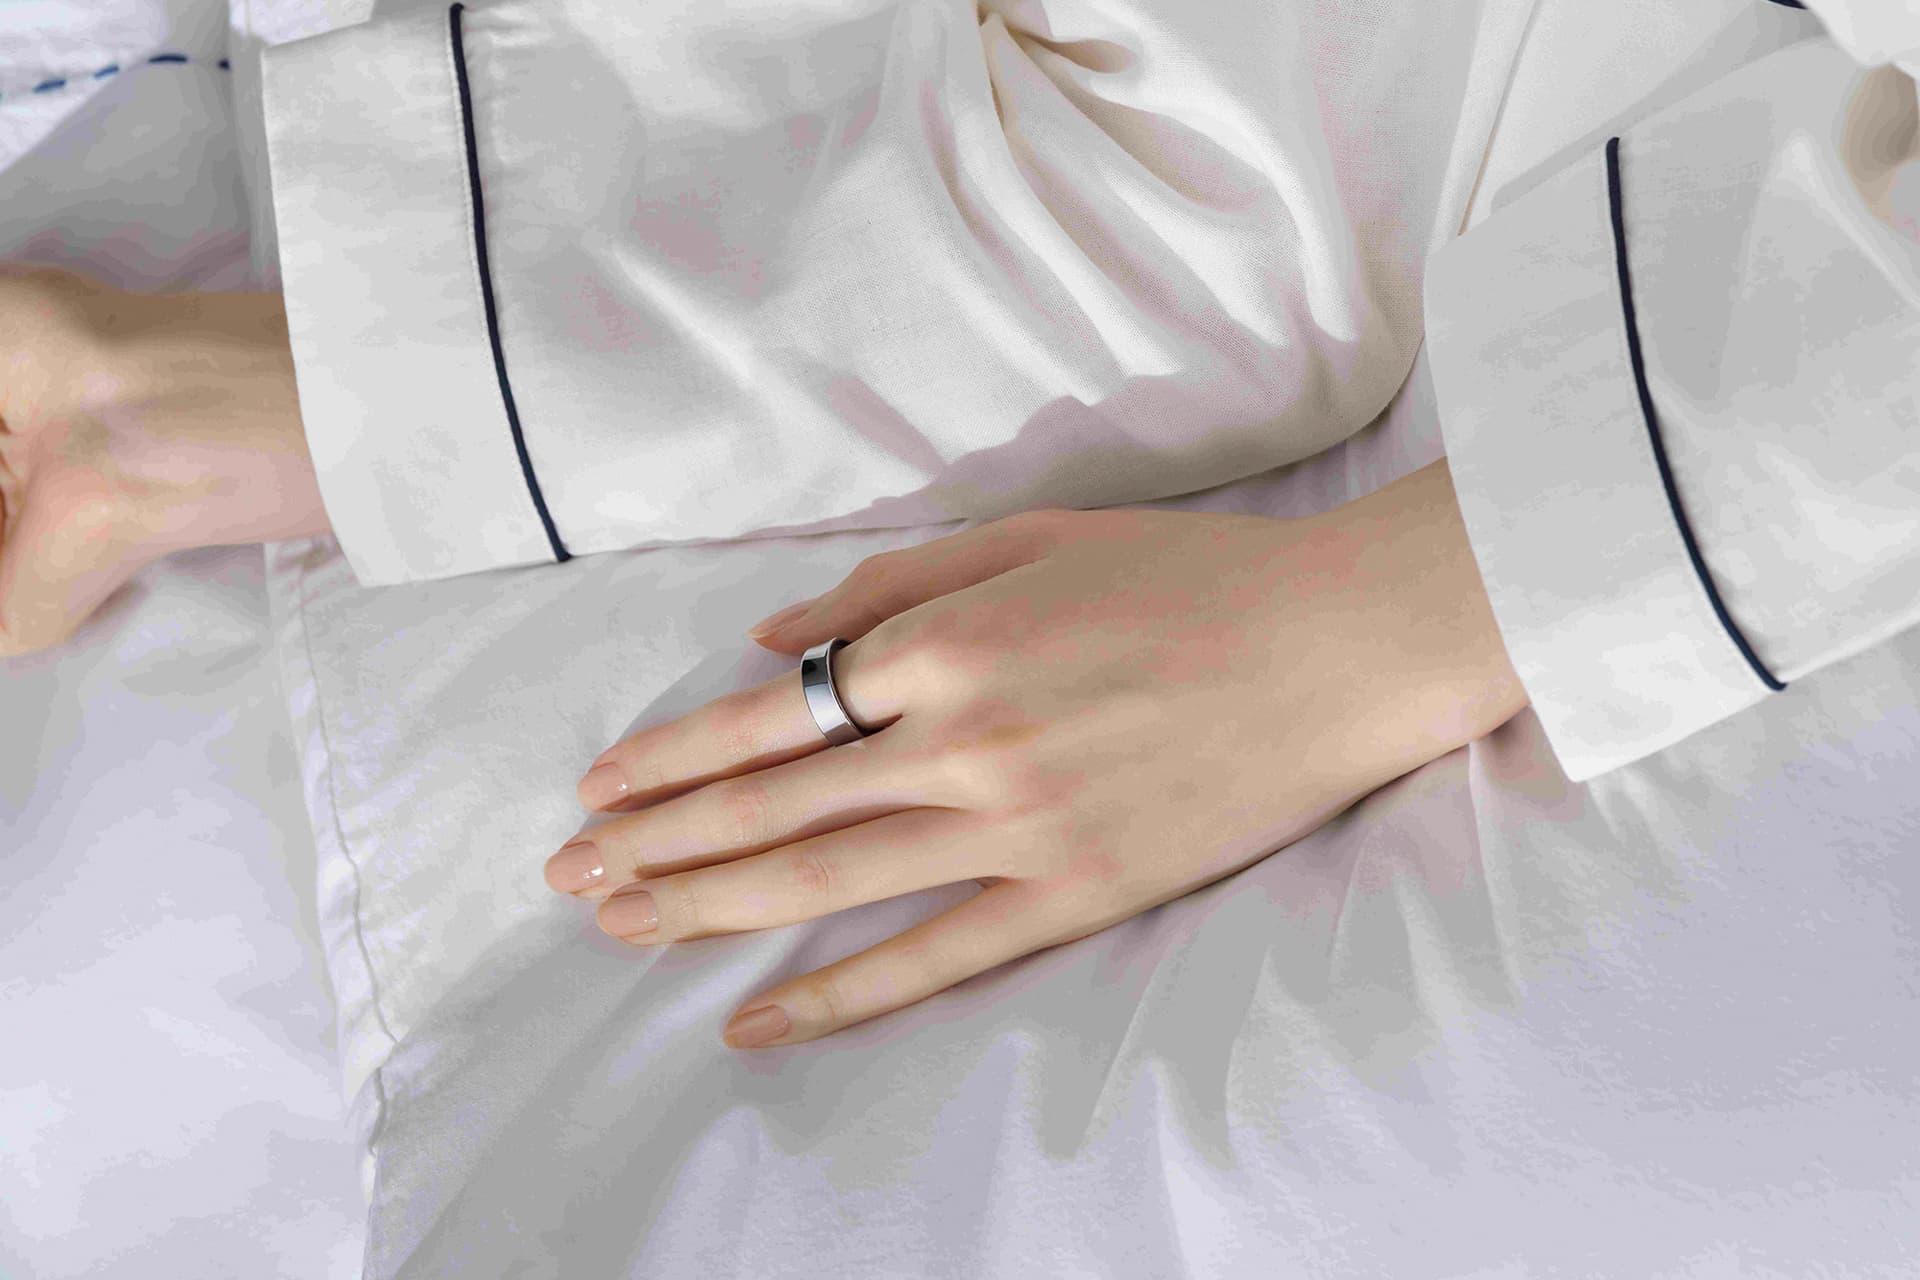 حلقه هوشمند سامسونگ گلکسی رینگ / Galaxy Ring در دست هنگام خواب